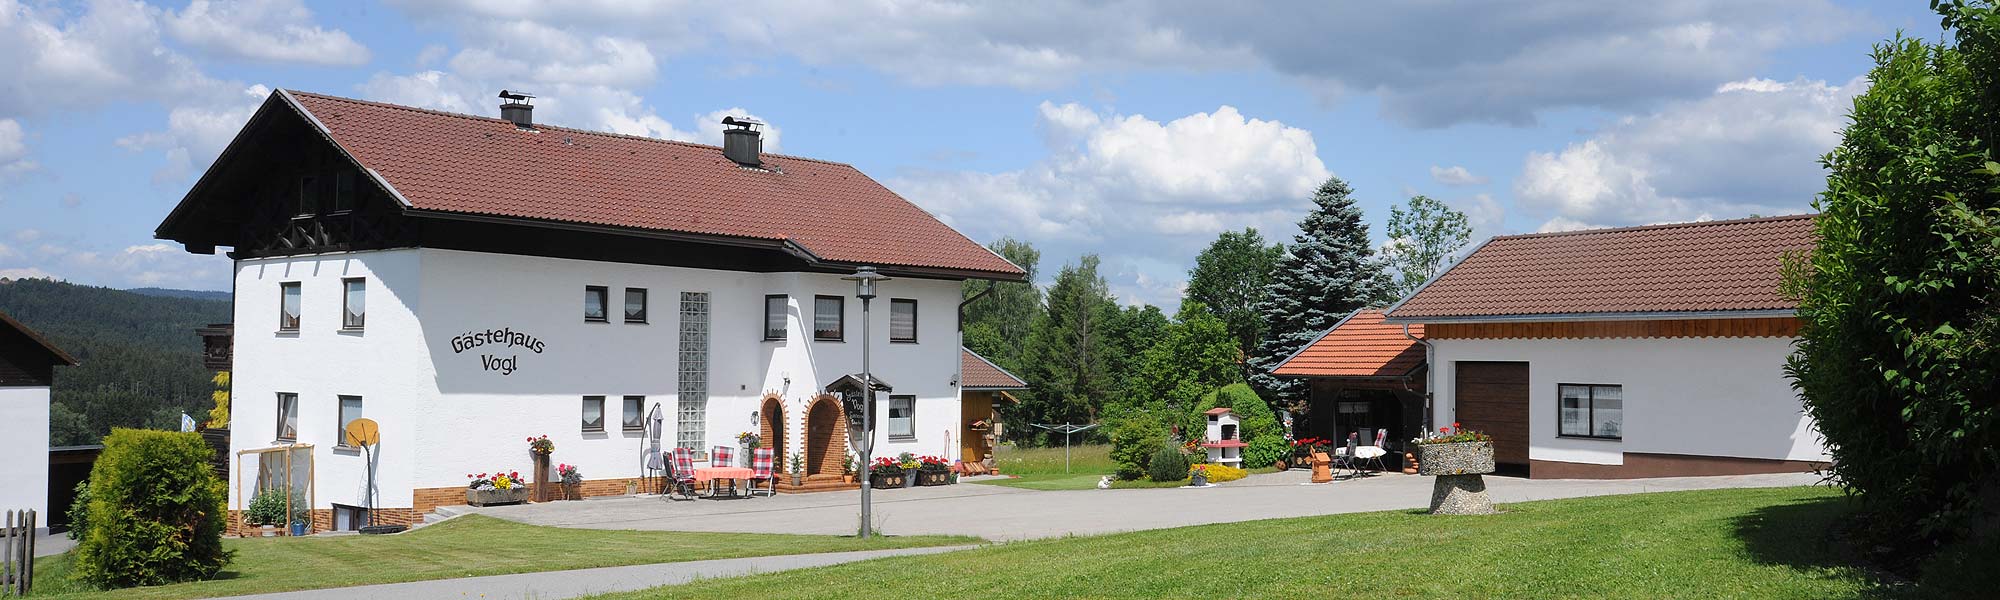 Gästehaus Vogl bei Bodenmais im Ortsteil Mais